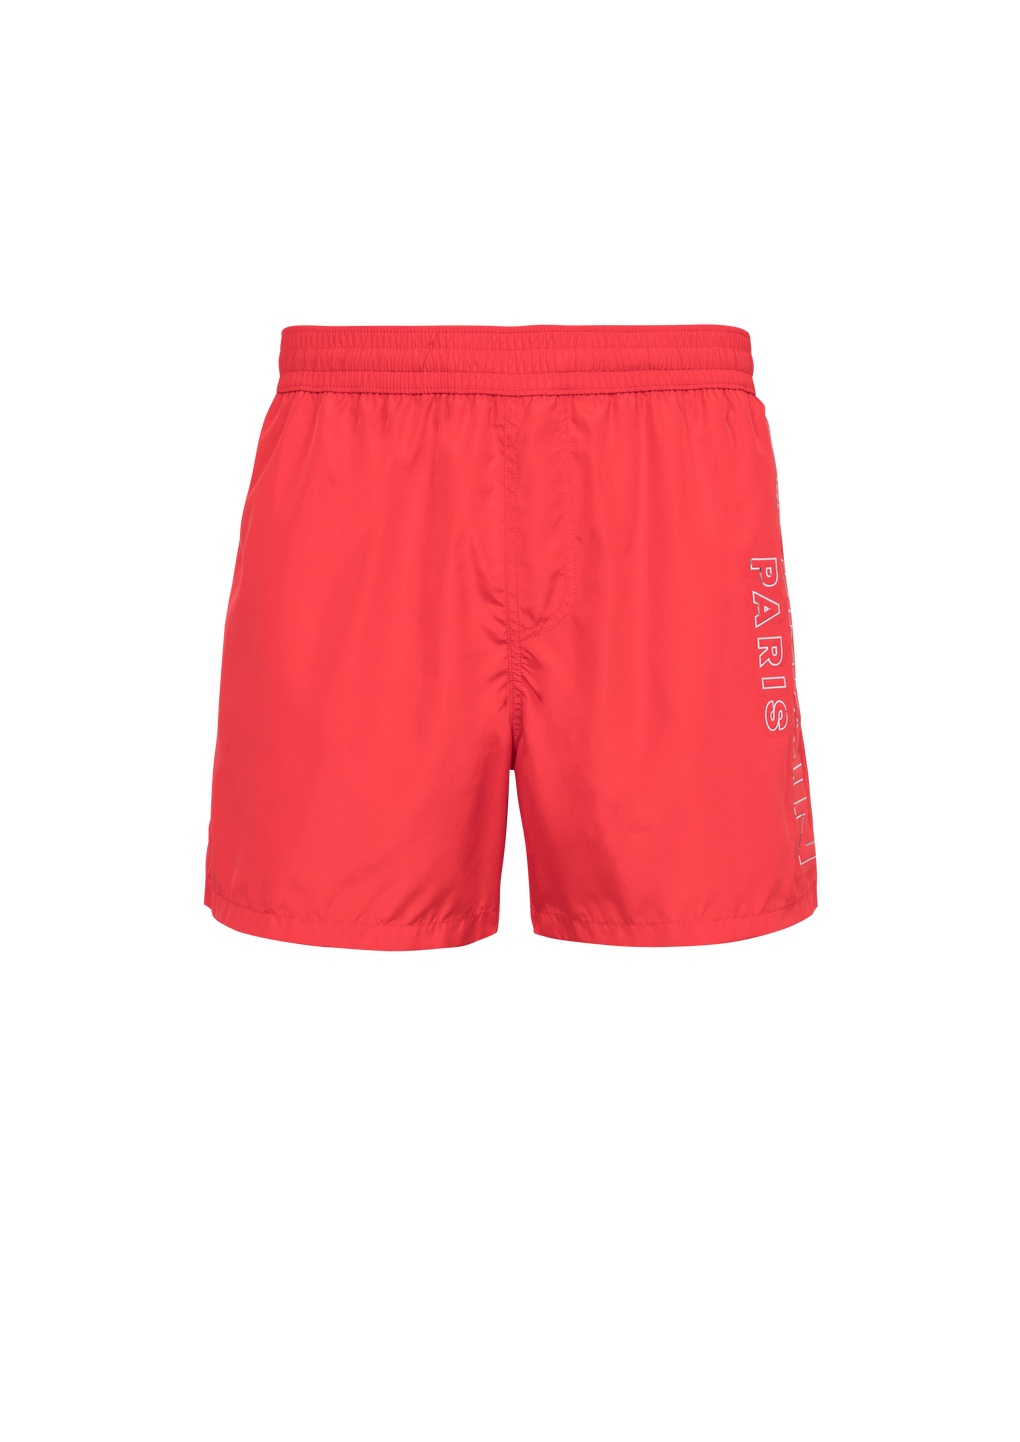 Shorts da bagno con logo Balmain, rosso, hi-res